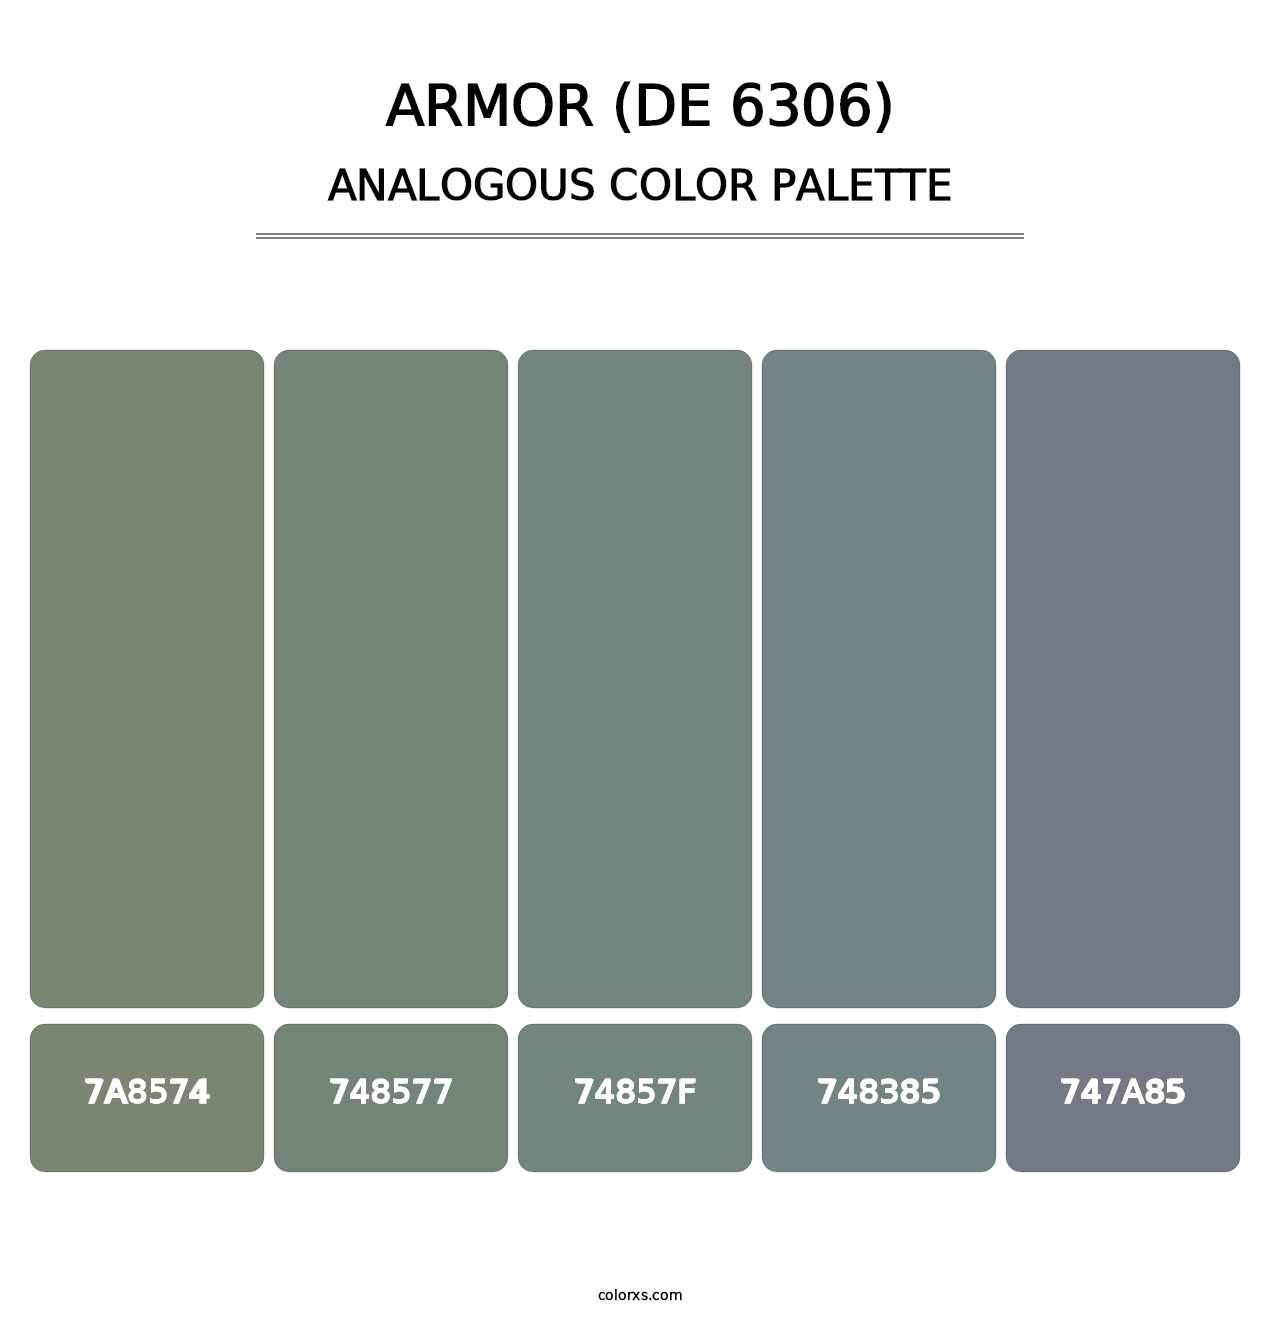 Armor (DE 6306) - Analogous Color Palette